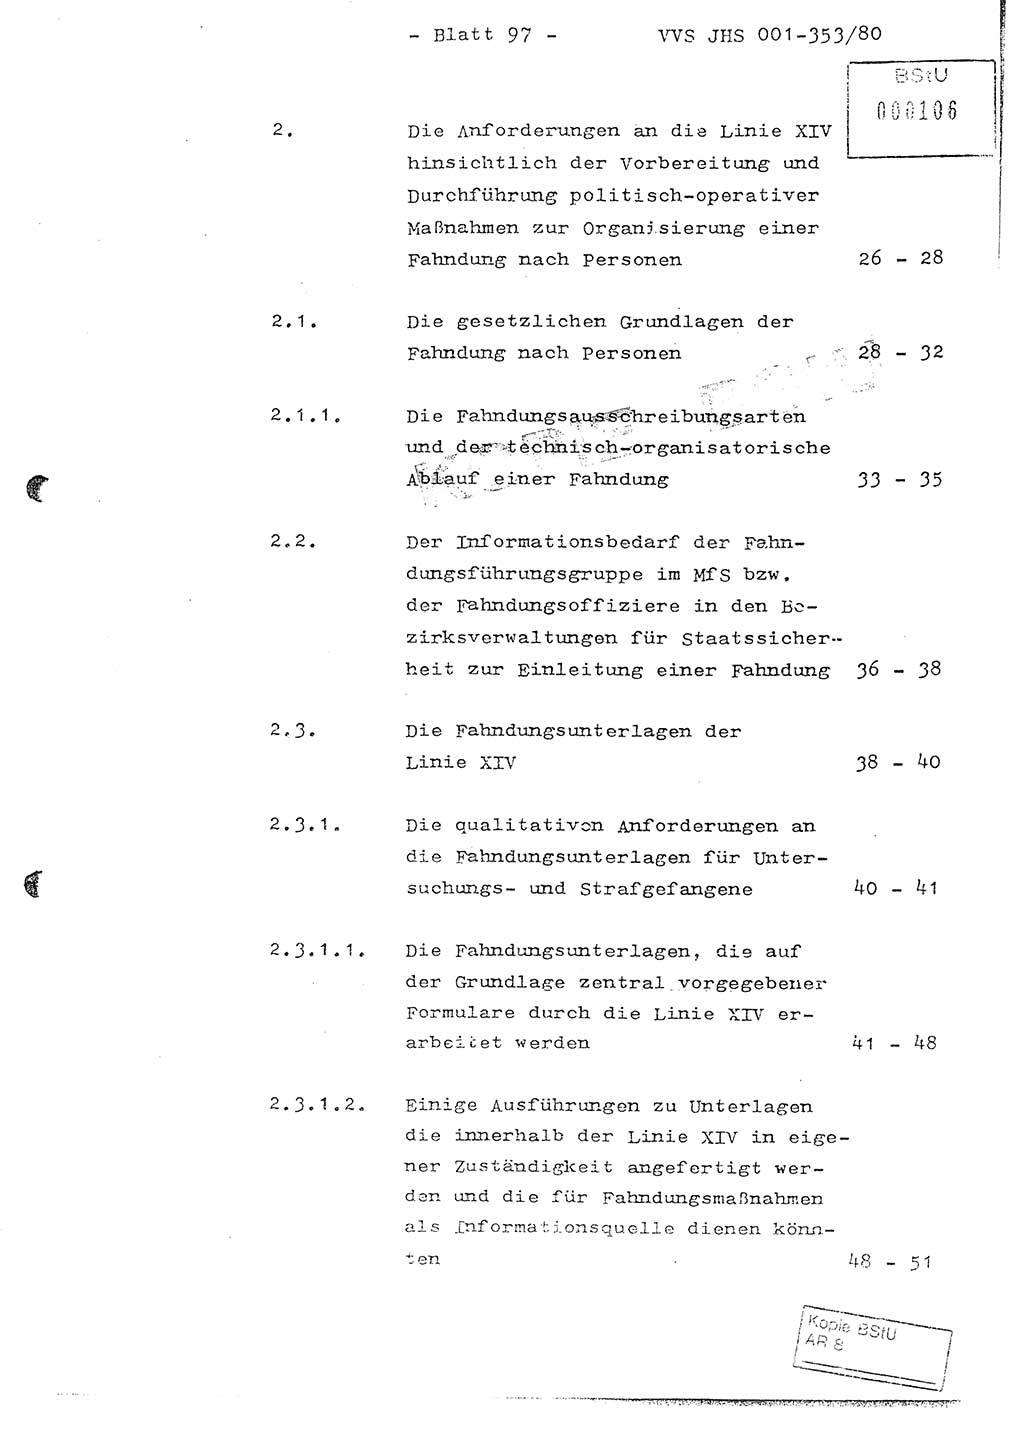 Diplomarbeit Hauptmann Joachim Klaumünzner (Abt. ⅩⅣ), Ministerium für Staatssicherheit (MfS) [Deutsche Demokratische Republik (DDR)], Juristische Hochschule (JHS), Vertrauliche Verschlußsache (VVS) o001-353/80, Potsdam 1980, Blatt 97 (Dipl.-Arb. MfS DDR JHS VVS o001-353/80 1980, Bl. 97)